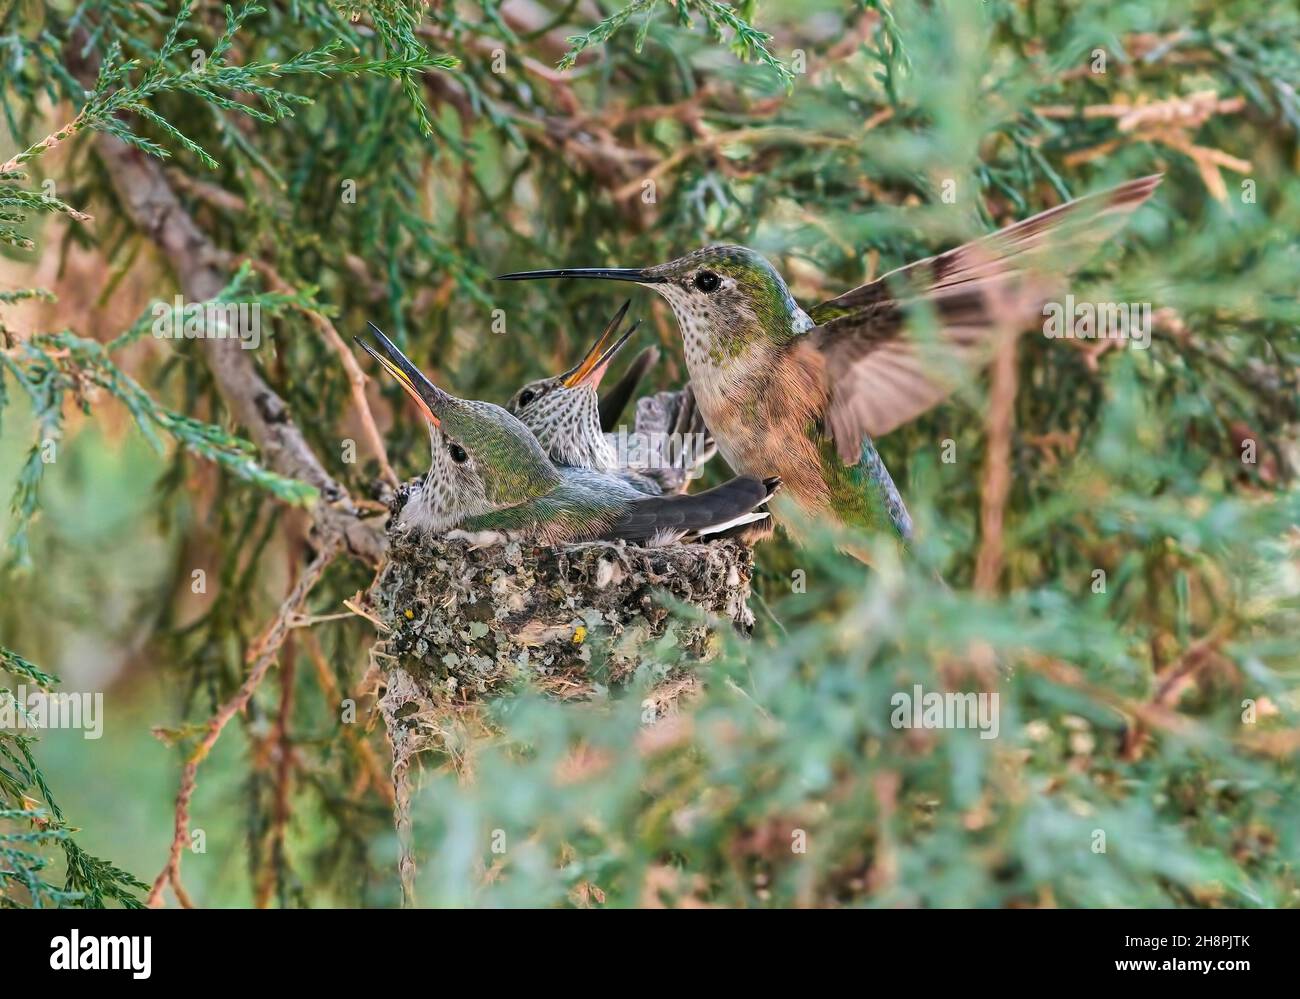 Un colibrí Mama entra para alimentar a su bebé colibríes en el nido, revoloteando por ellos mientras esperan excitedly su próxima comida. Foto de stock